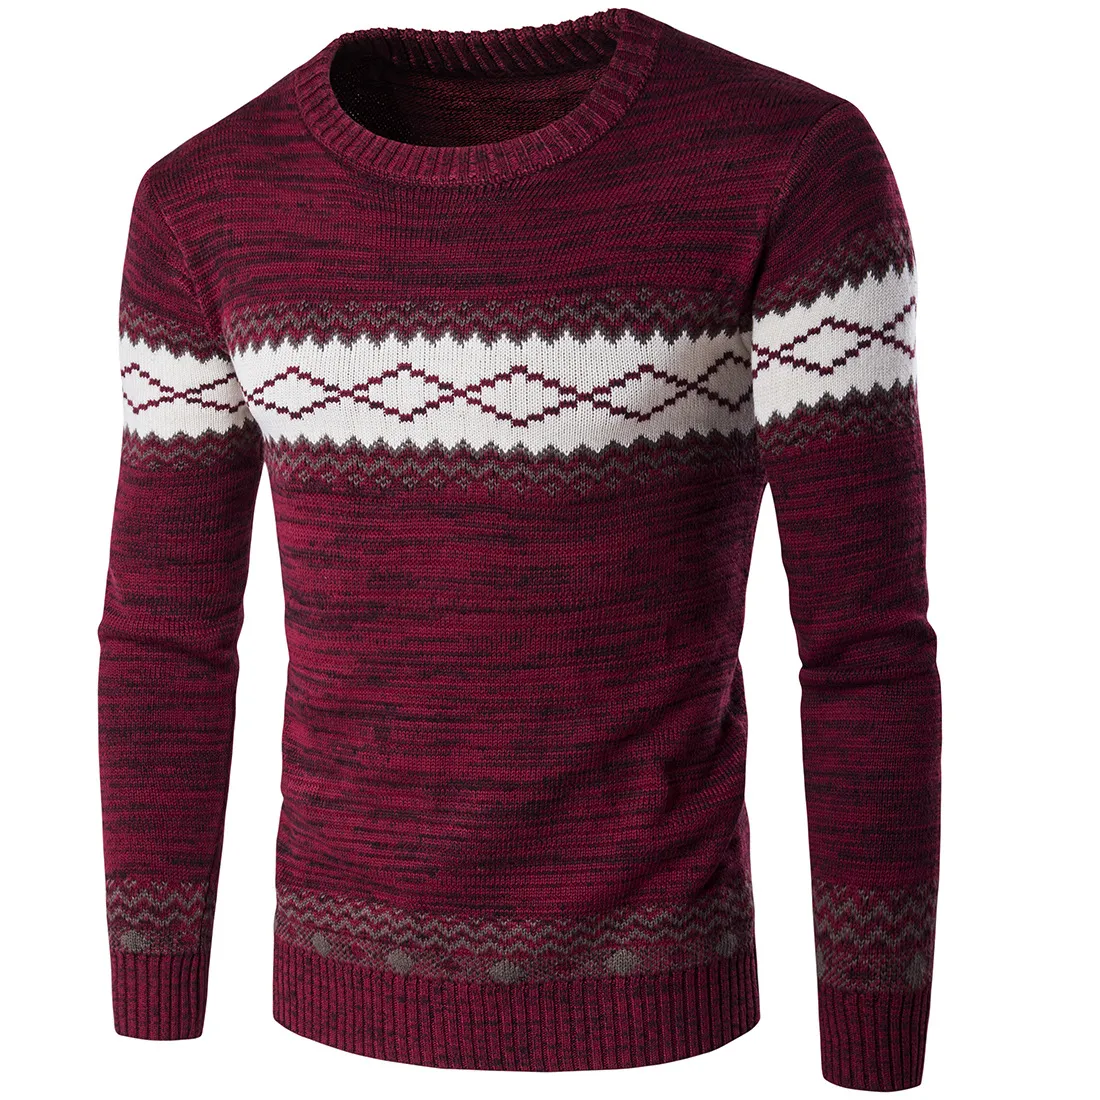 England Stil Winter Männer Weihnachten Pullover Männliche Muster Designer Pullover Jumper Slim Fit O-ansatz Pullover männer Sweatershirts